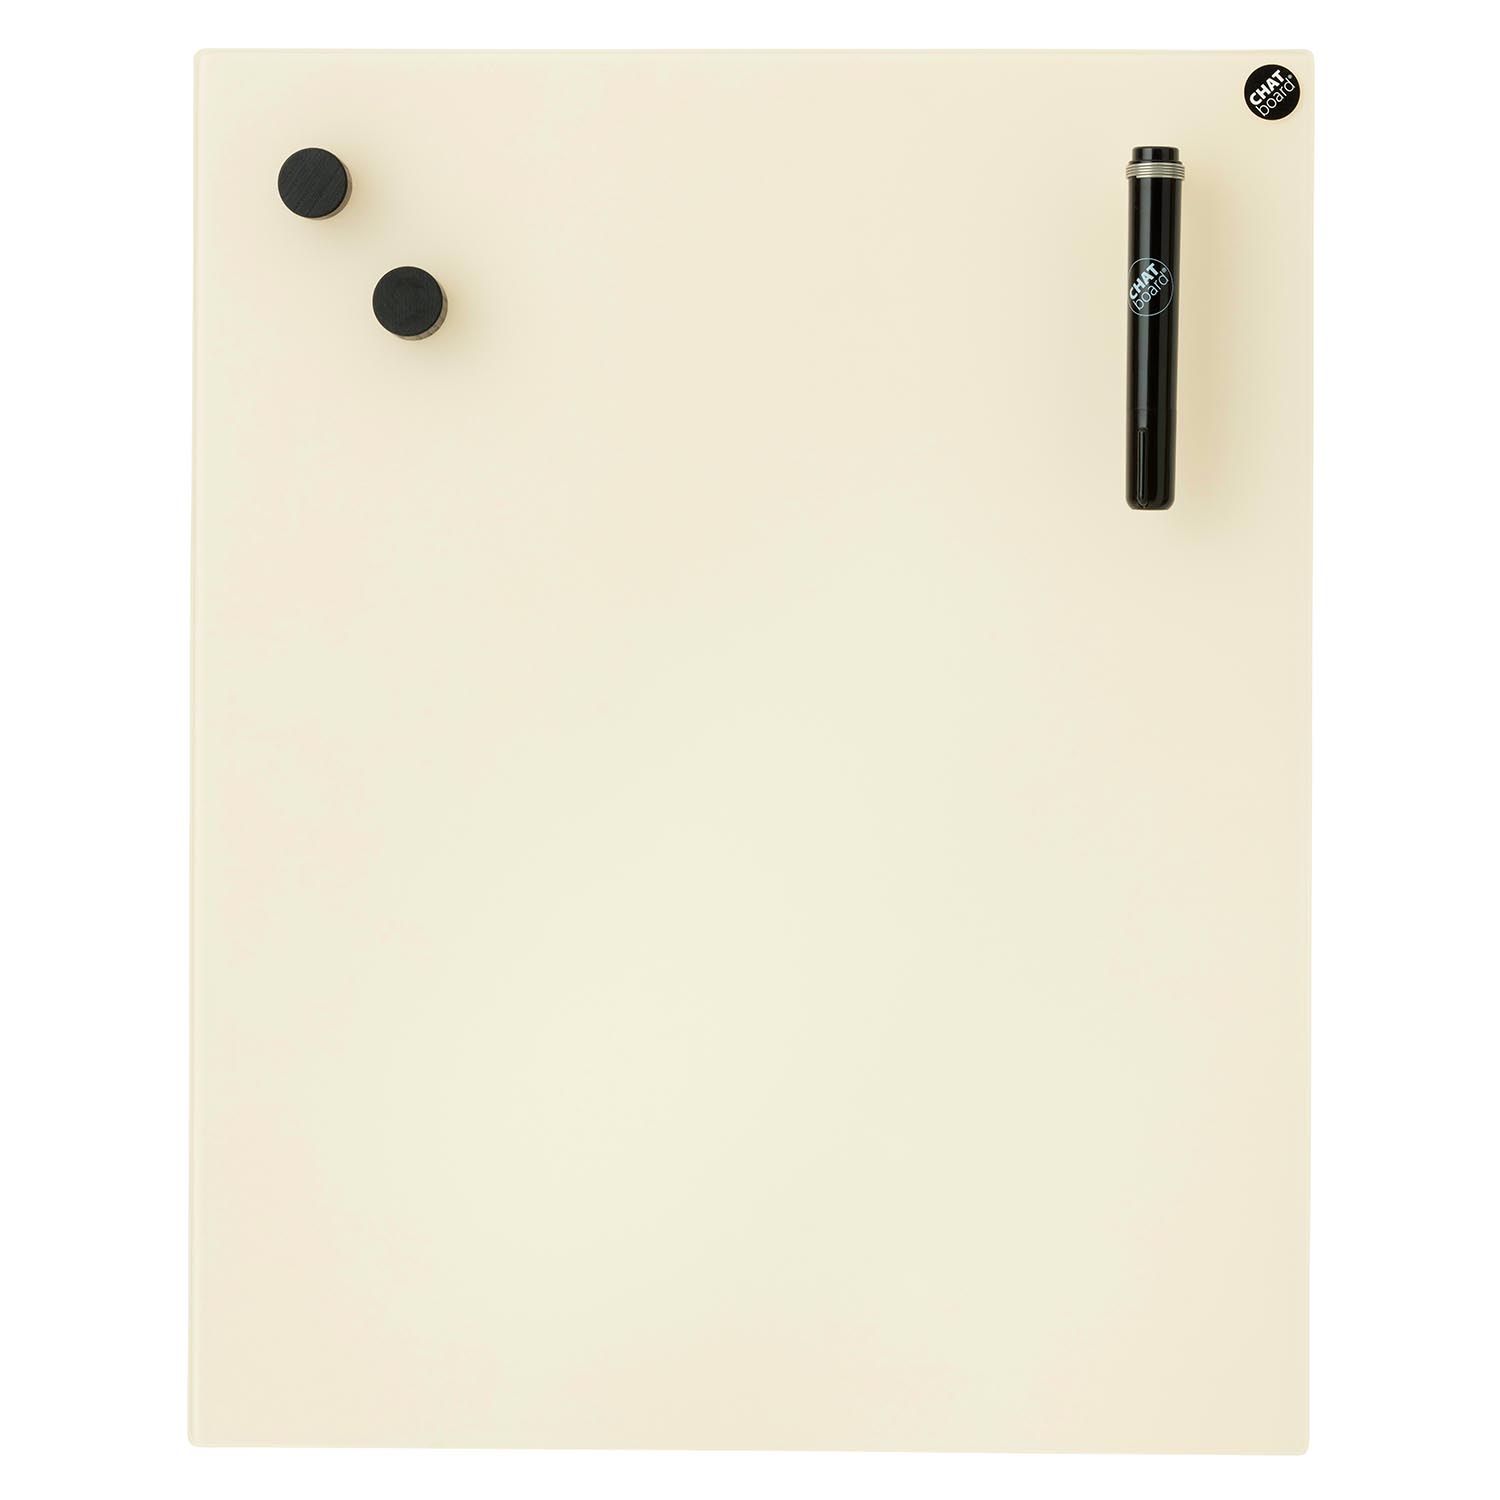 Classic Schreibtafel, Grösse 69.5 x 69.5 cm, Ausrichtung horizontal, Glas stone 41 mtsto von Chat Board